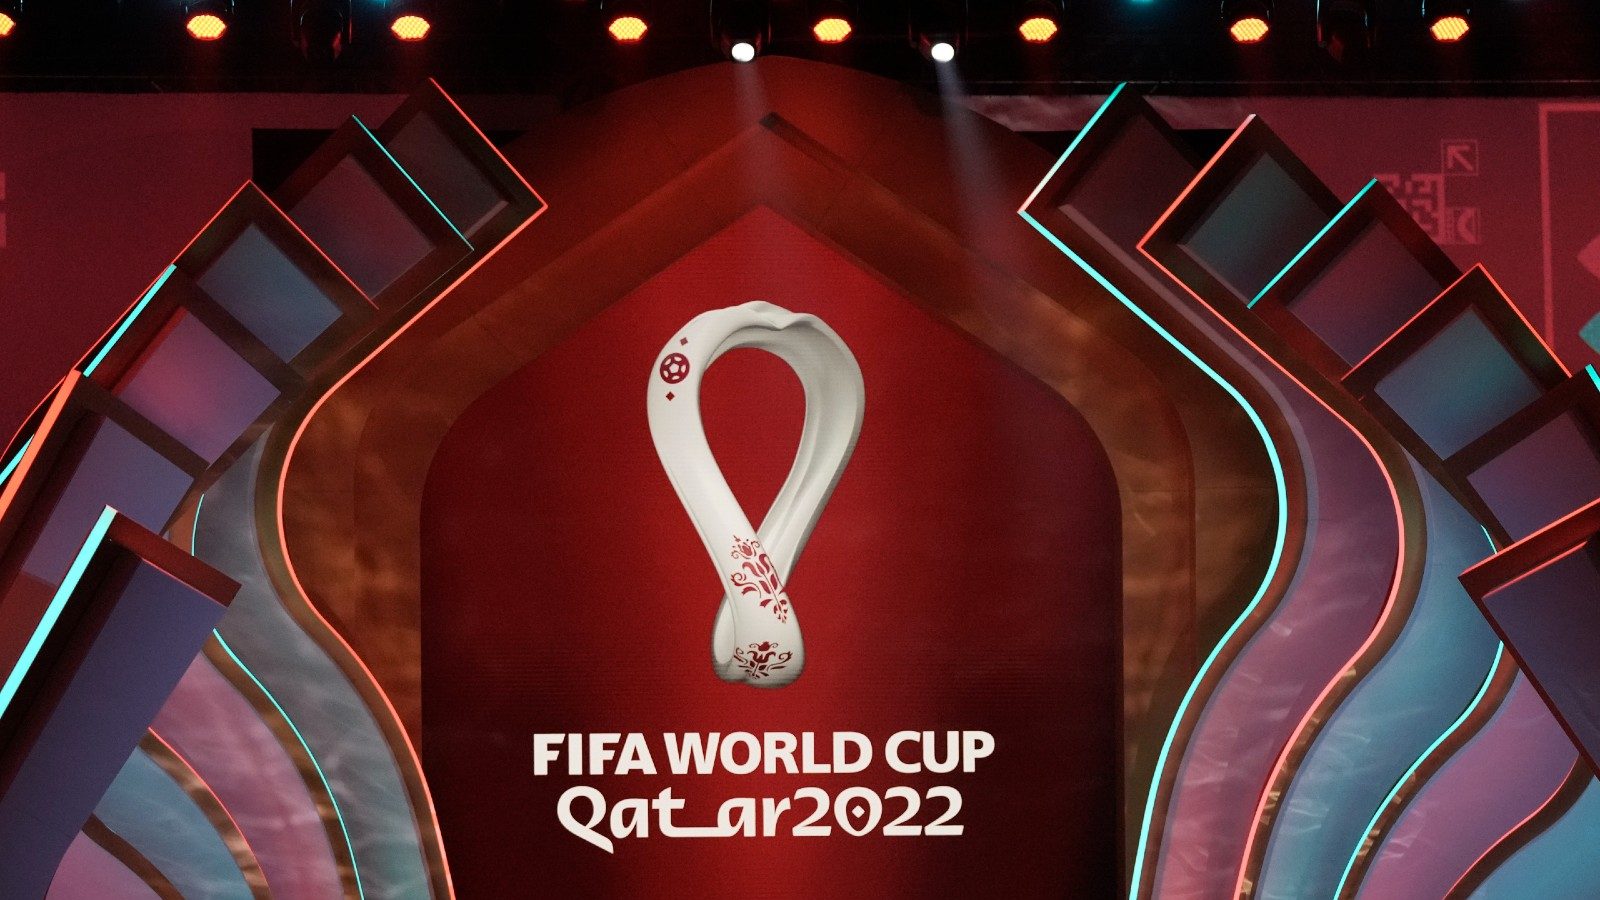 ফিফা বিশ্বকাপ 2022 - কাতার টুর্নামেন্ট এখন একদিন আগে শুরু হবে